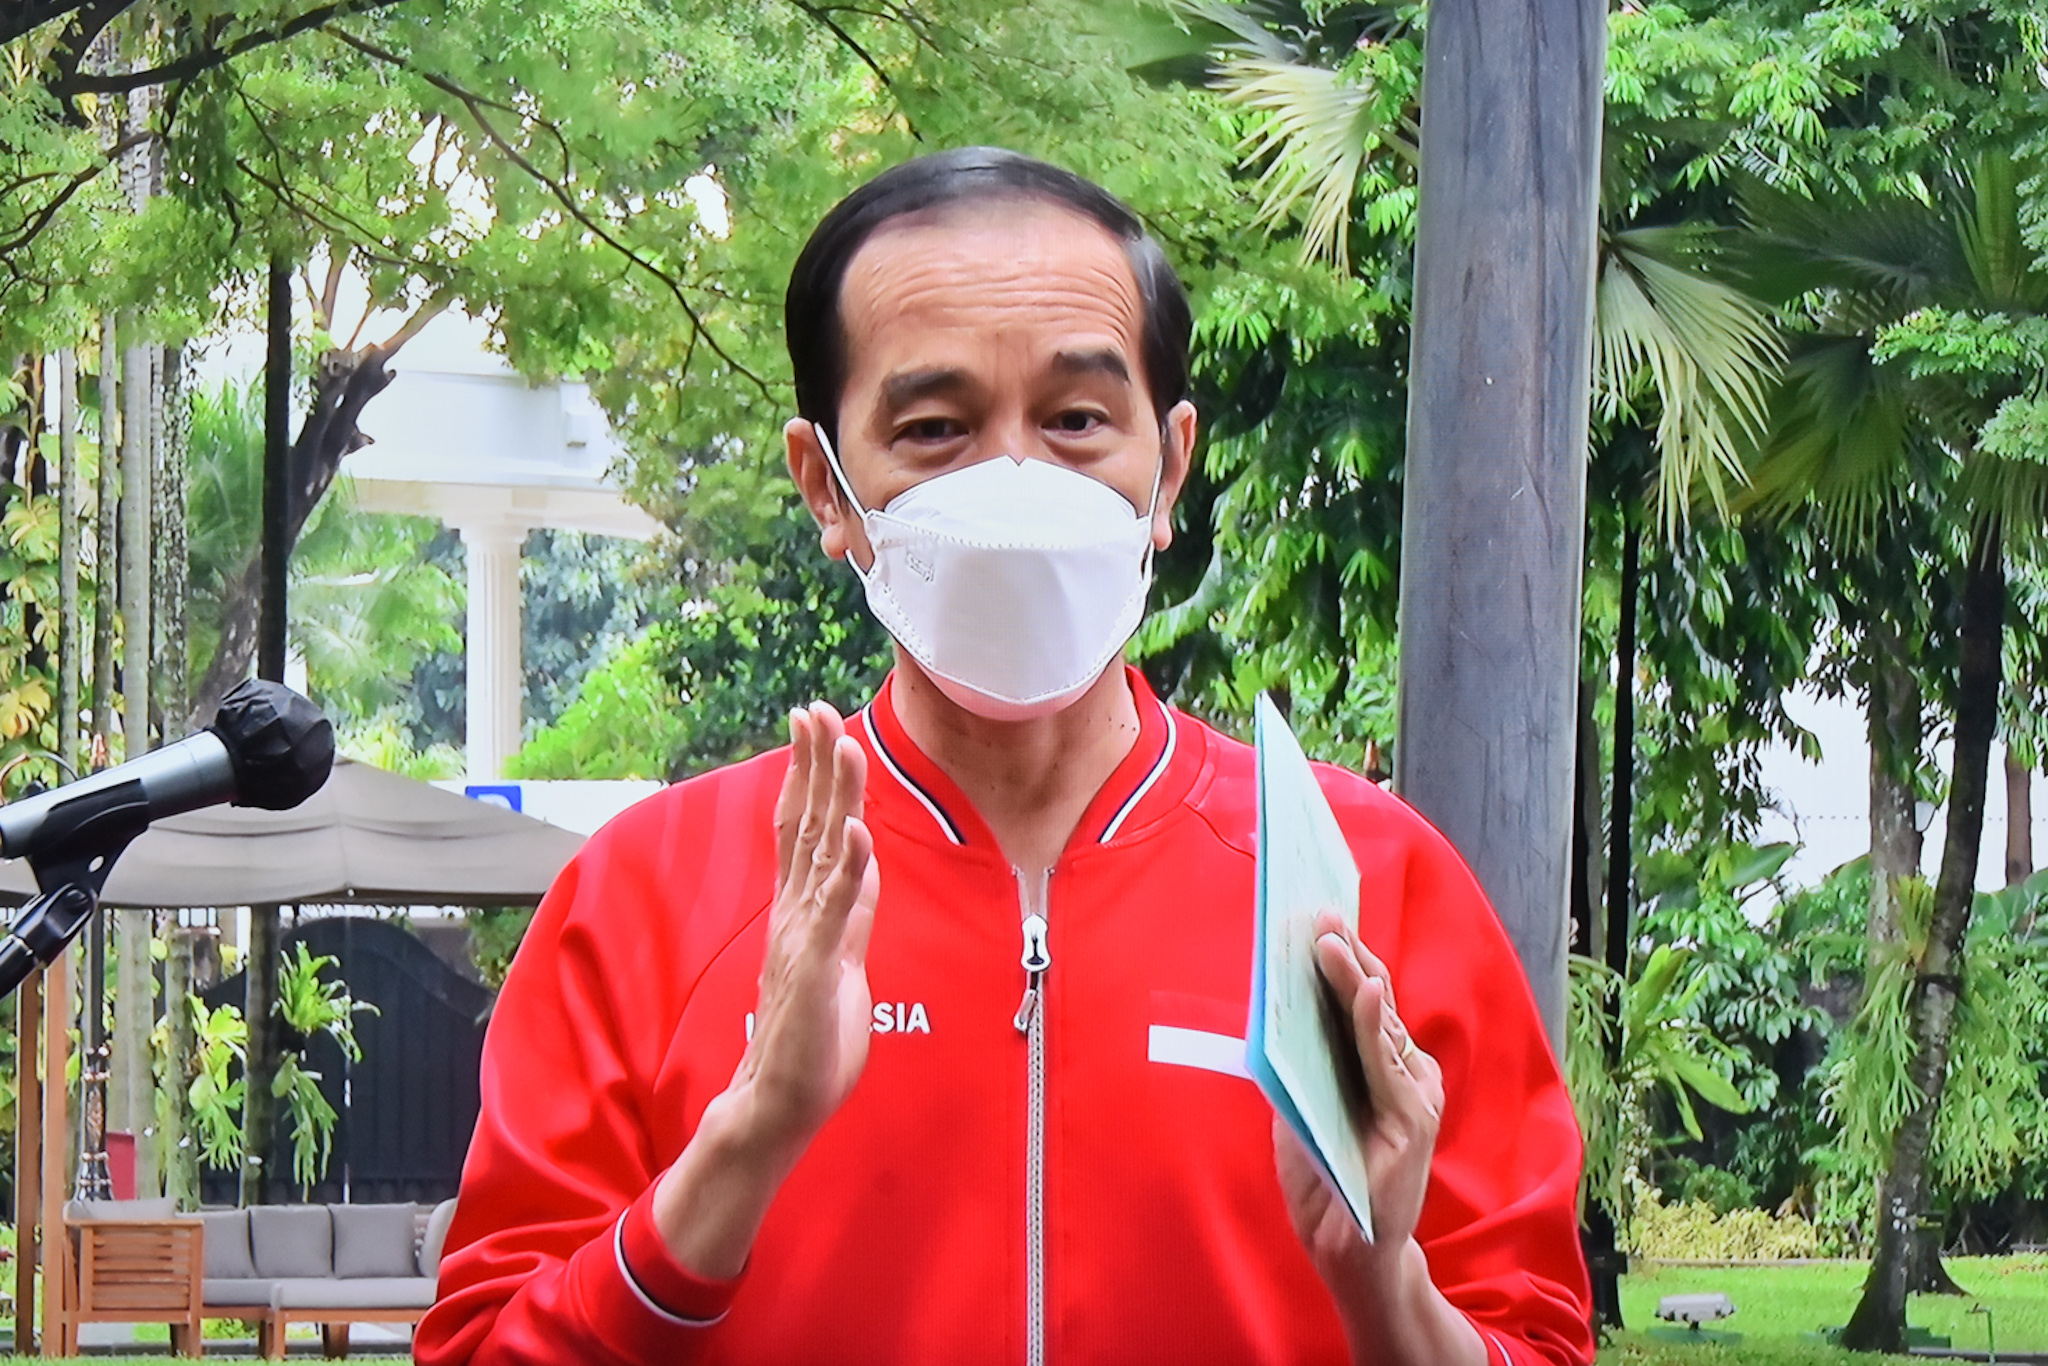 Presiden Jokowi memberikan pernyataan usai menerima vaksinasi COVID-19 dosis kedua, Rabu (27/1), di halaman tengah Istana Kepresidenan, Jakarta. (Foto: Humas/Jay)